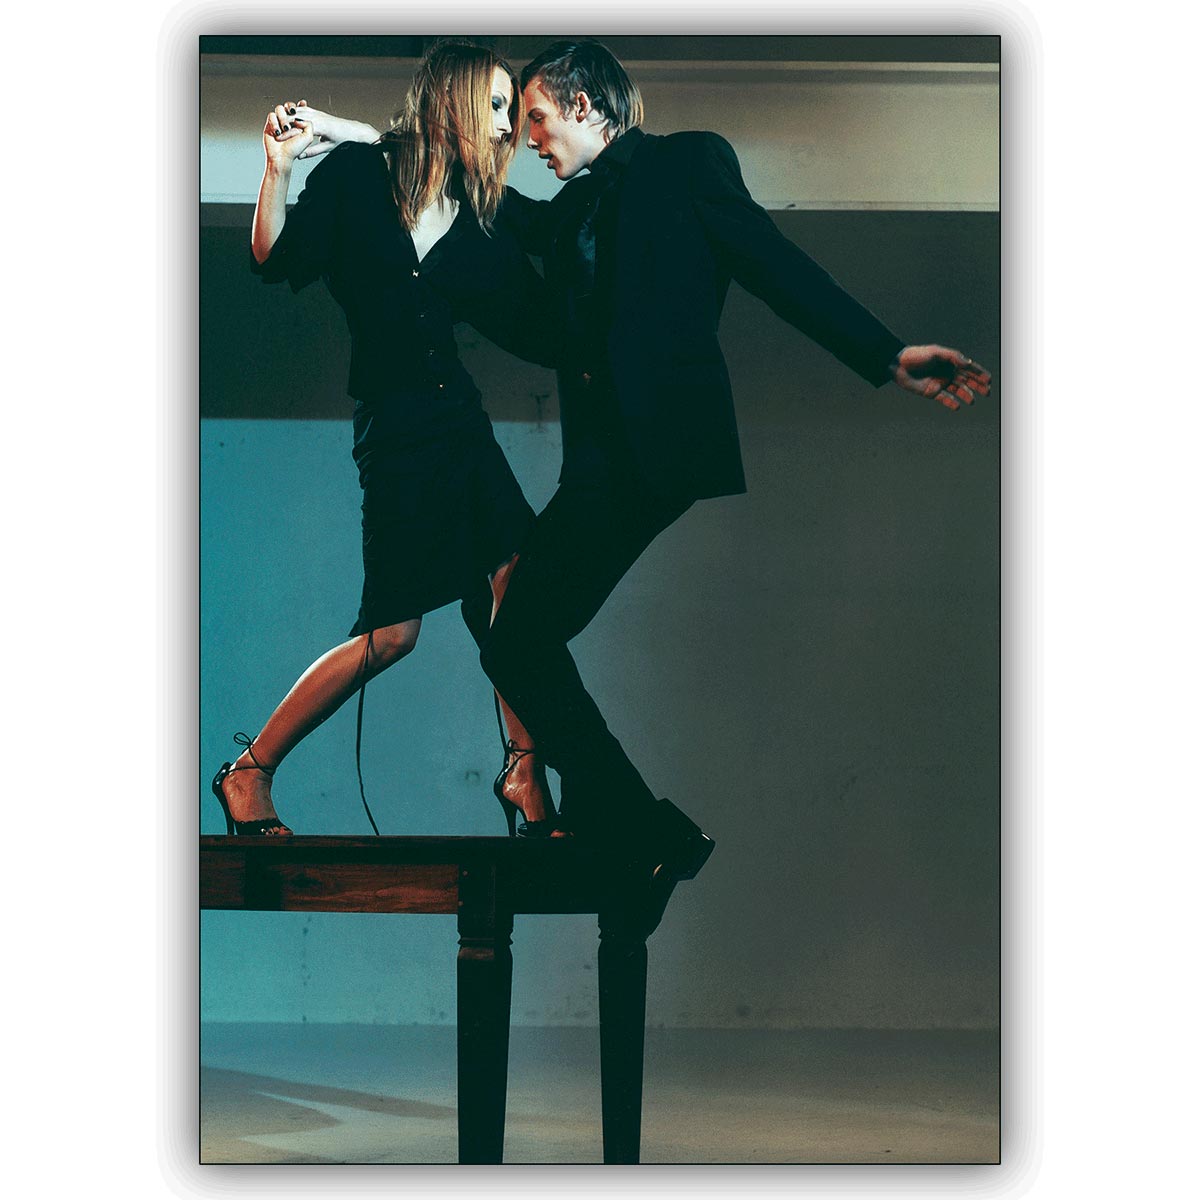 Künstlerische Fotokunst Tanz Klappkarte: It takes two to tango